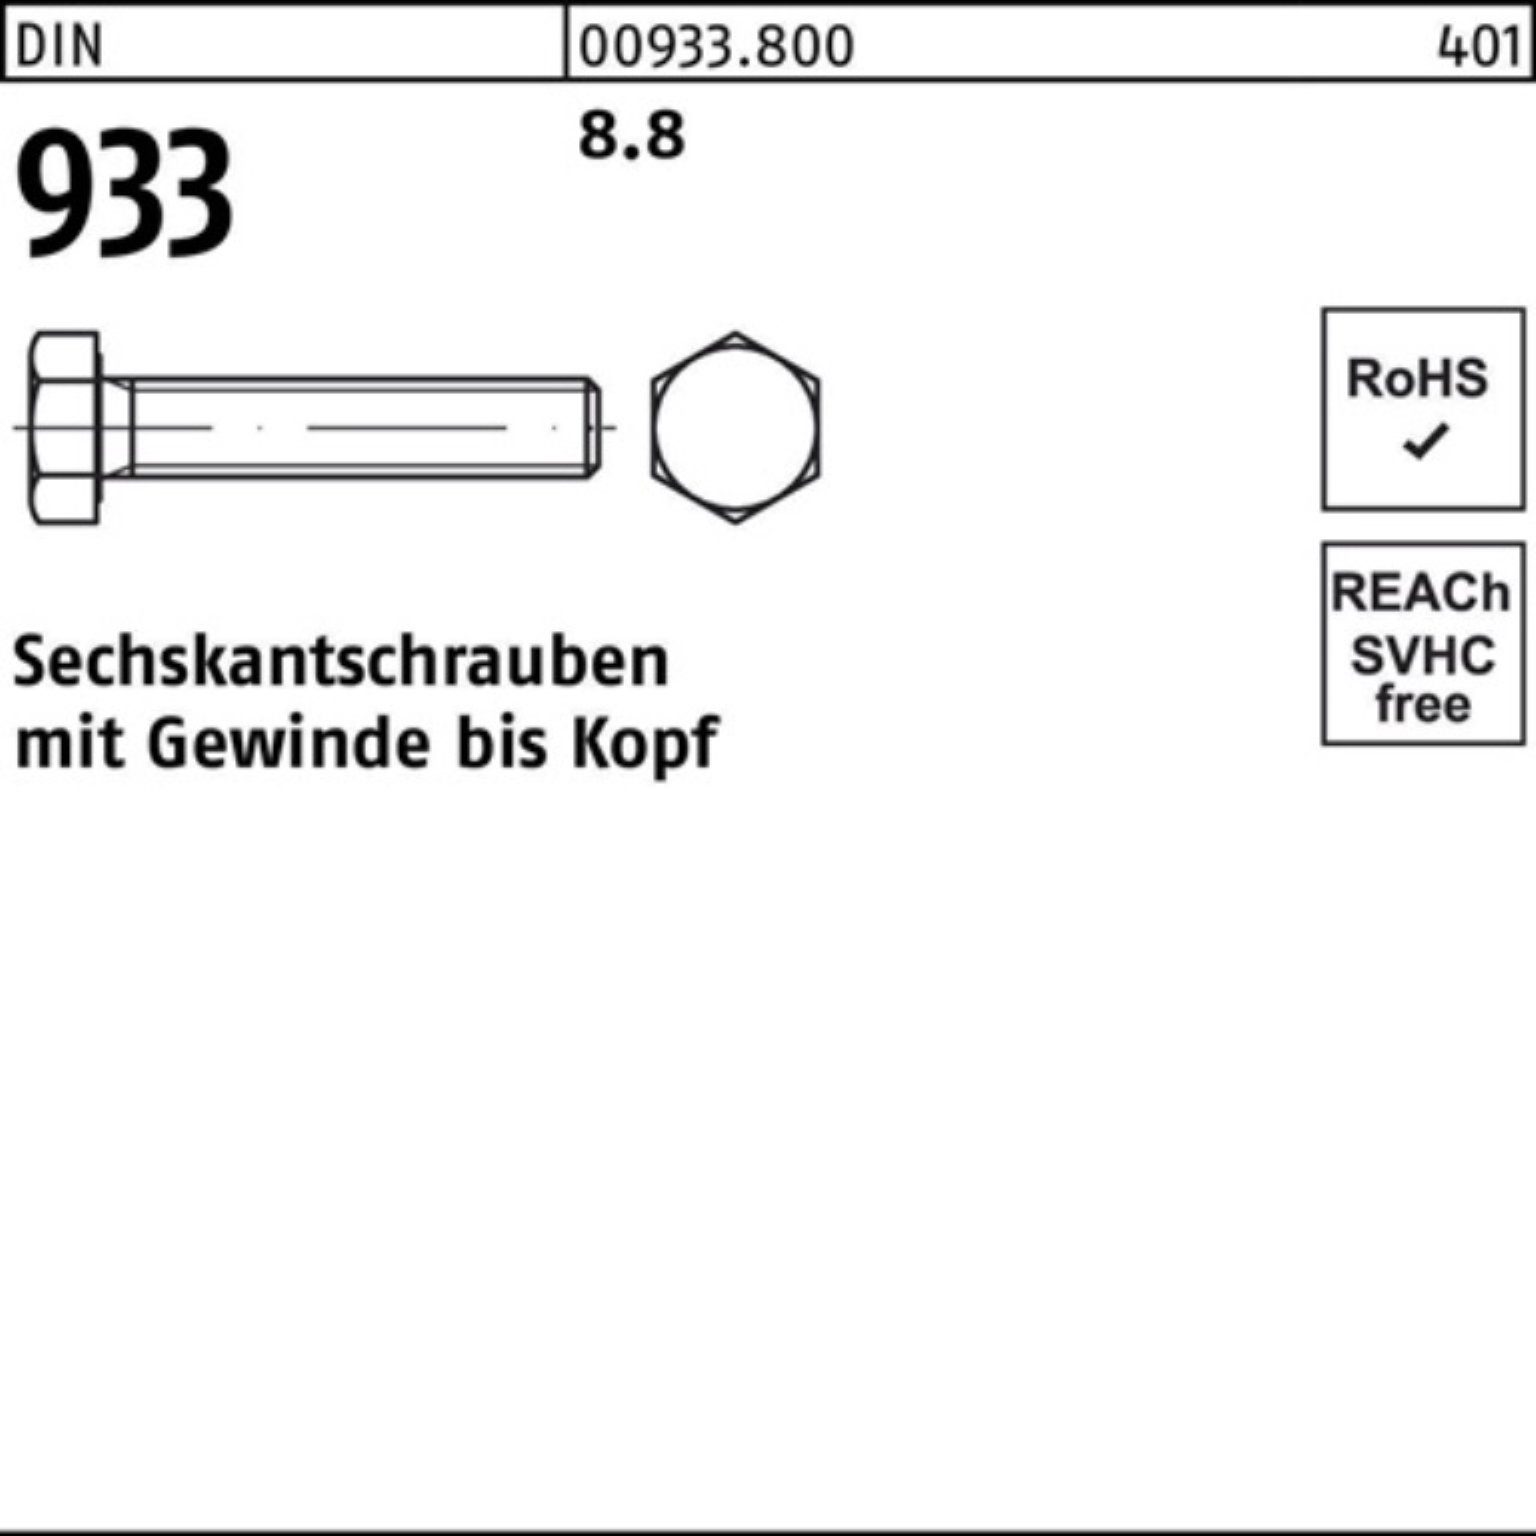 Reyher Sechskantschraube 100er VG 933 6 8.8 933 8 100 DIN Pack Sechskantschraube Stück DIN M4x